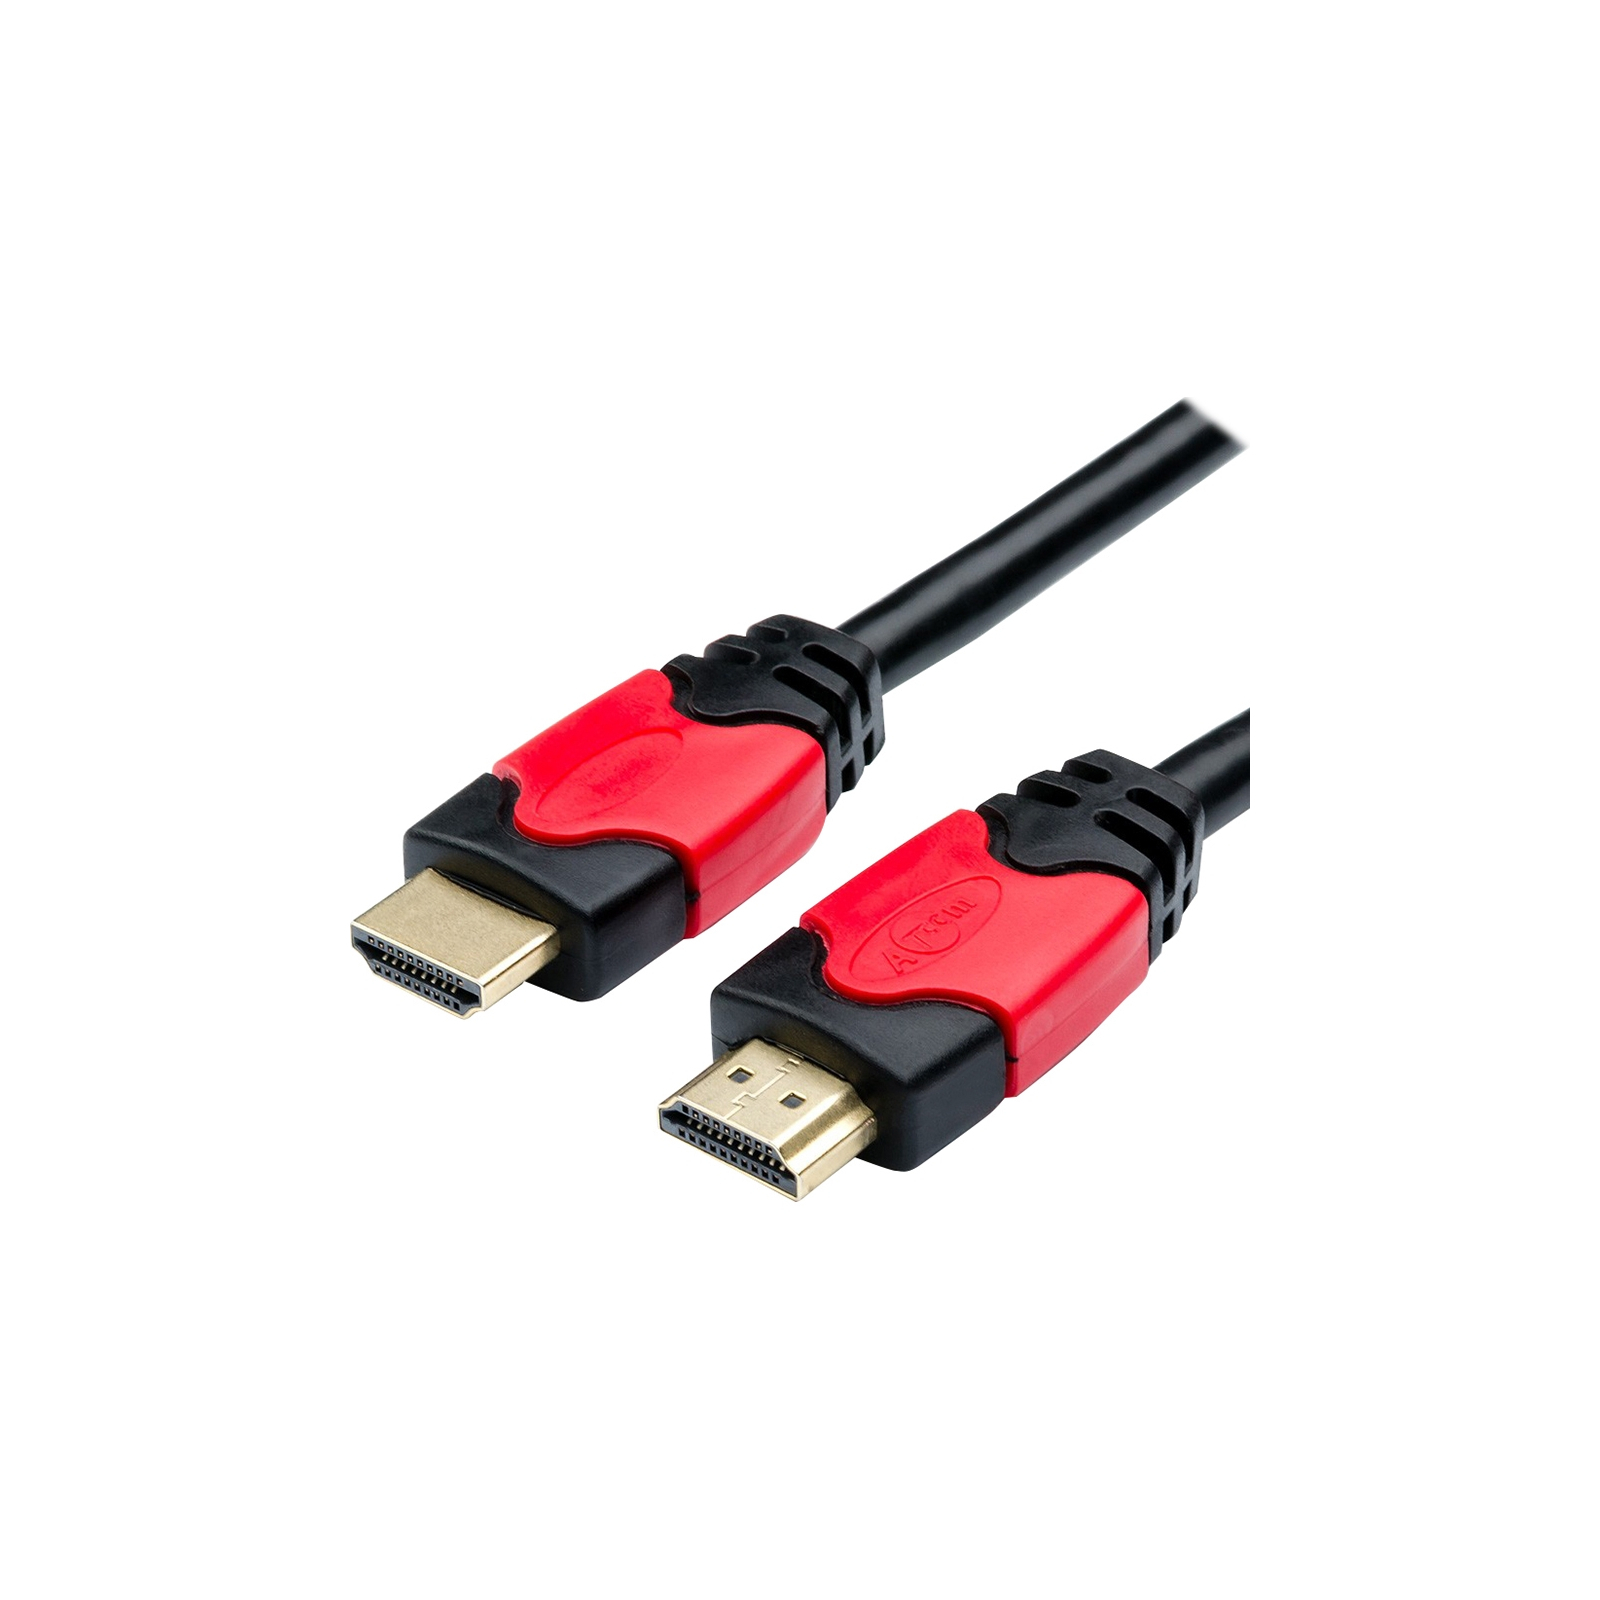 Кабель мультимедійний HDMI to HDMI 30.0m V2.0 Red/Gold Atcom (24930)